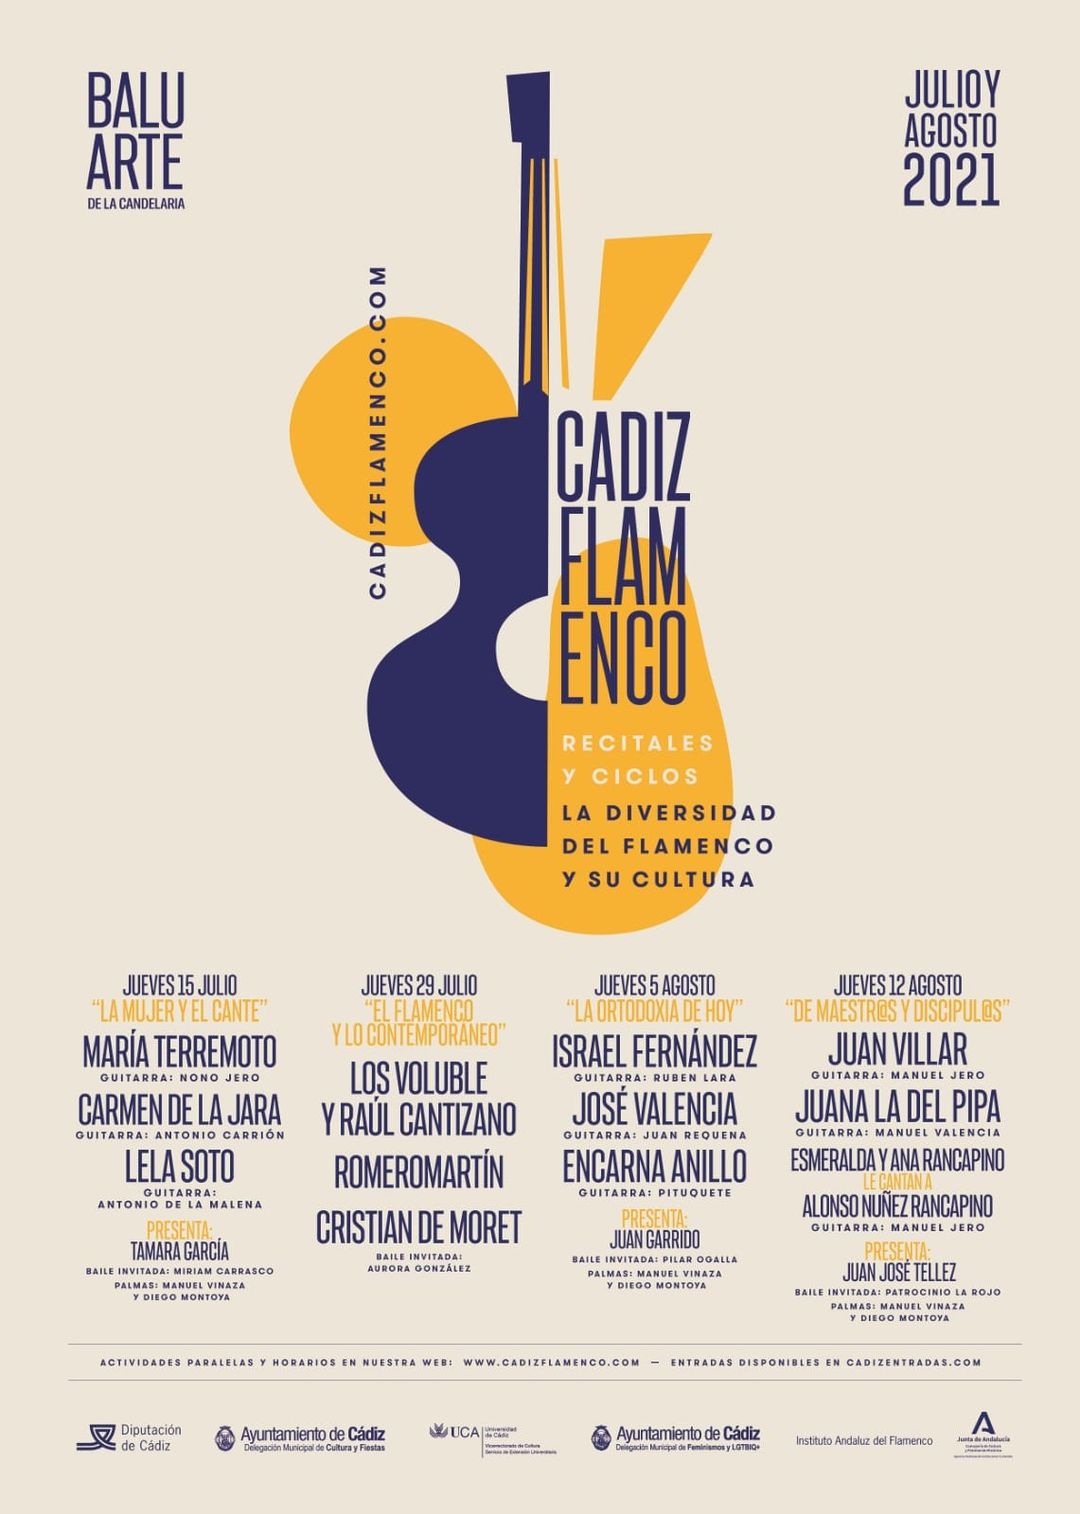 Plakat Cádiz neu flamenco